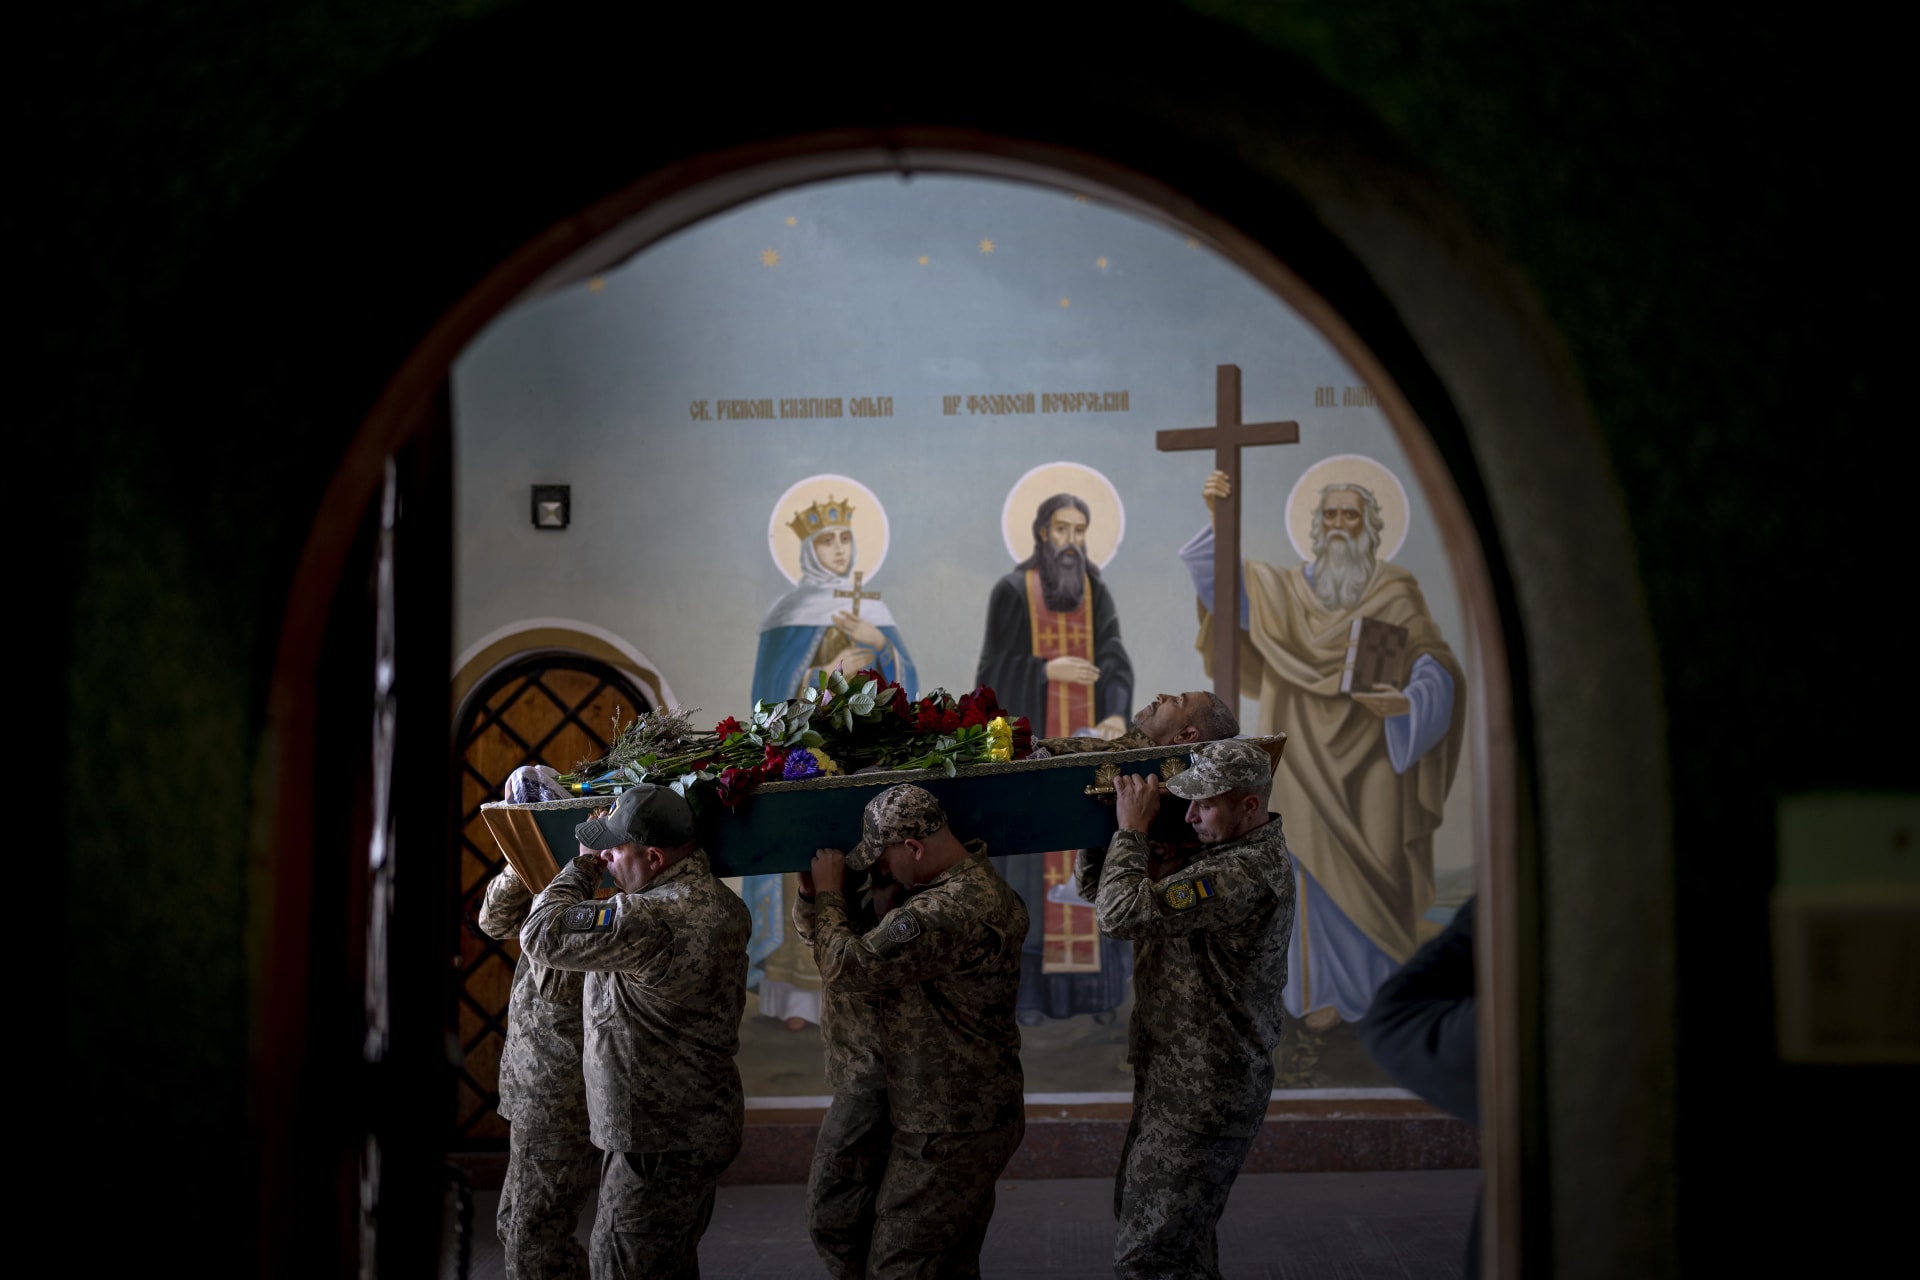 Ukrajinci poklekli před kolonou s padlými vojáky. (Ilustrační foto)